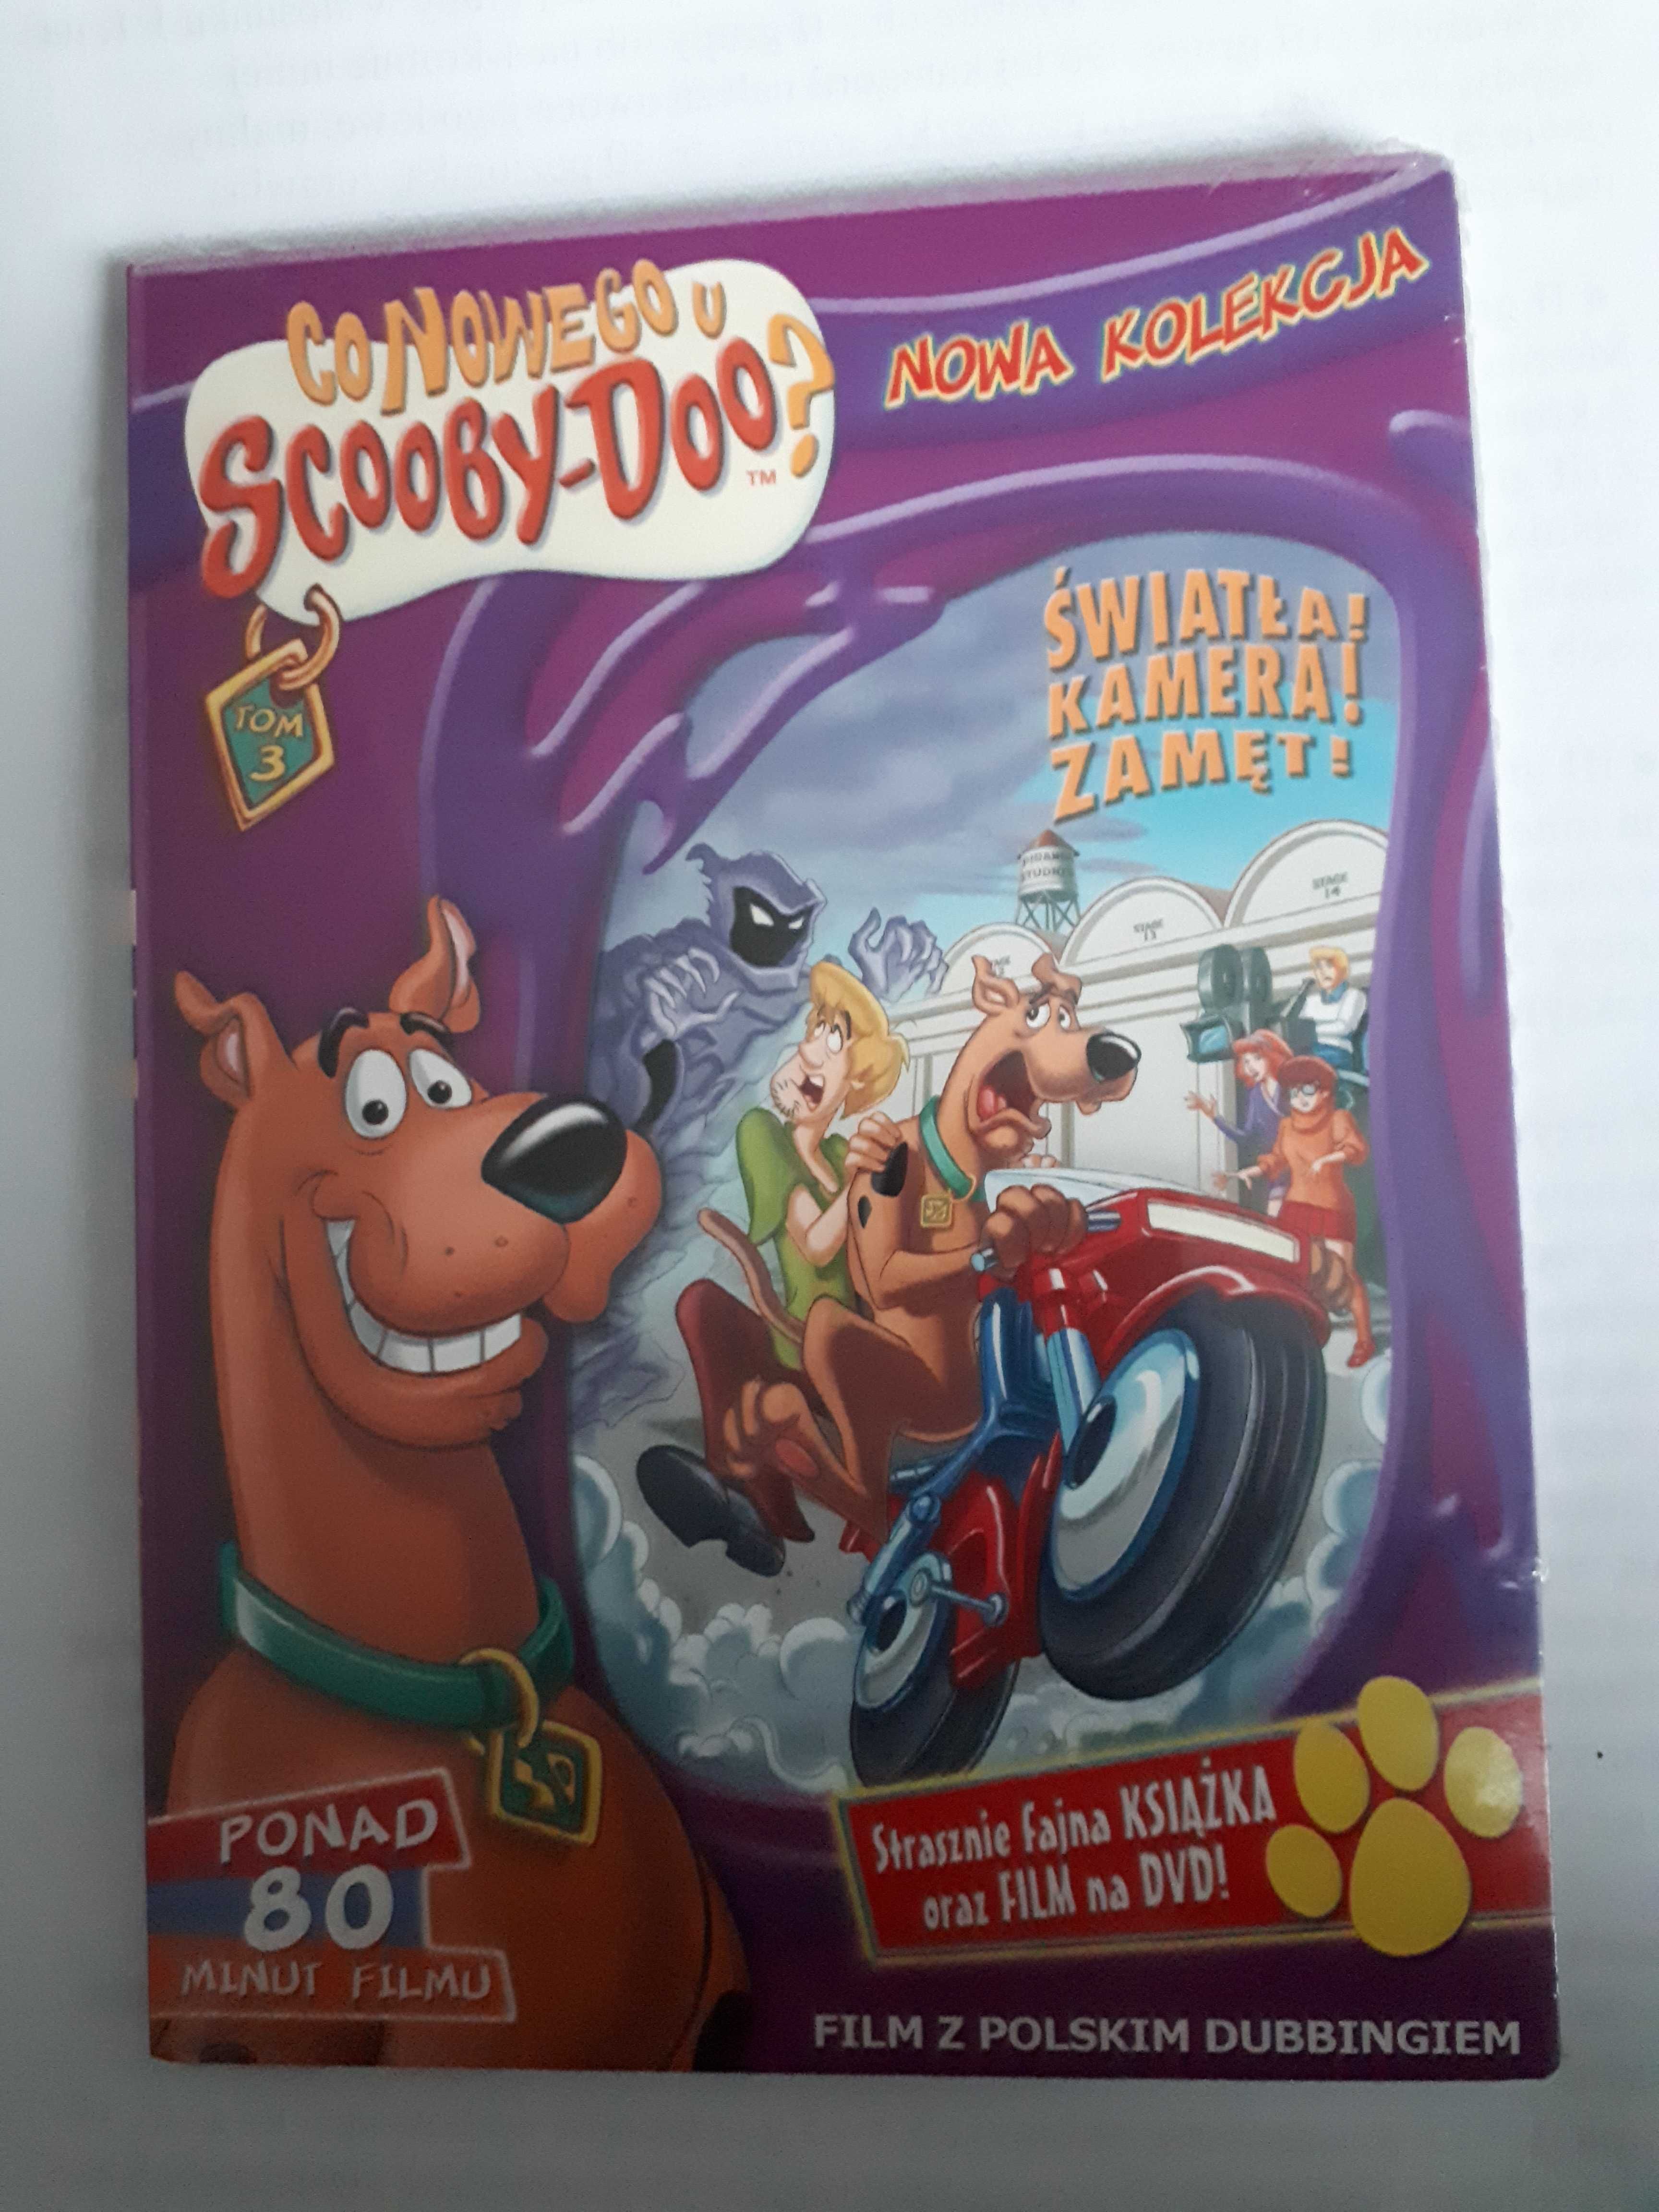 Co nowego u Scooby-Doo 3 folia